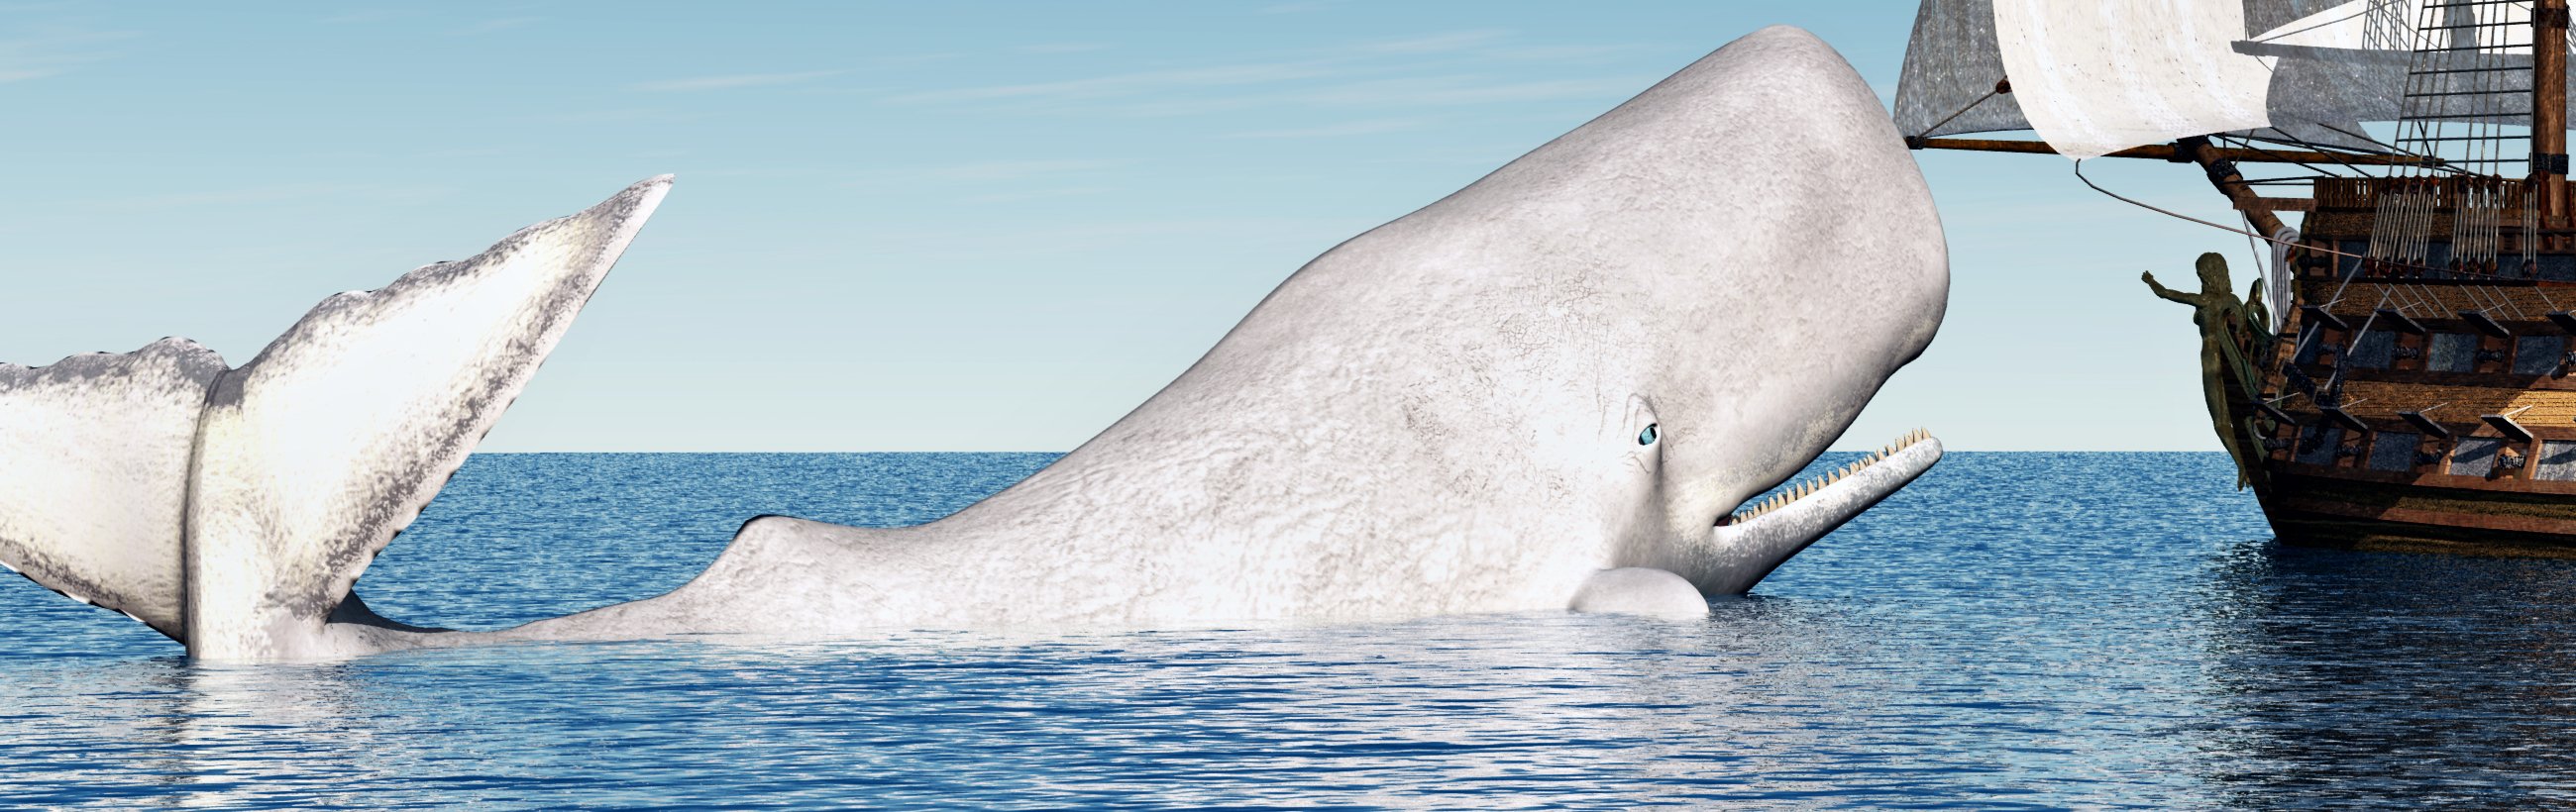 La ballena blanca que rescata a los que abandonan el barco